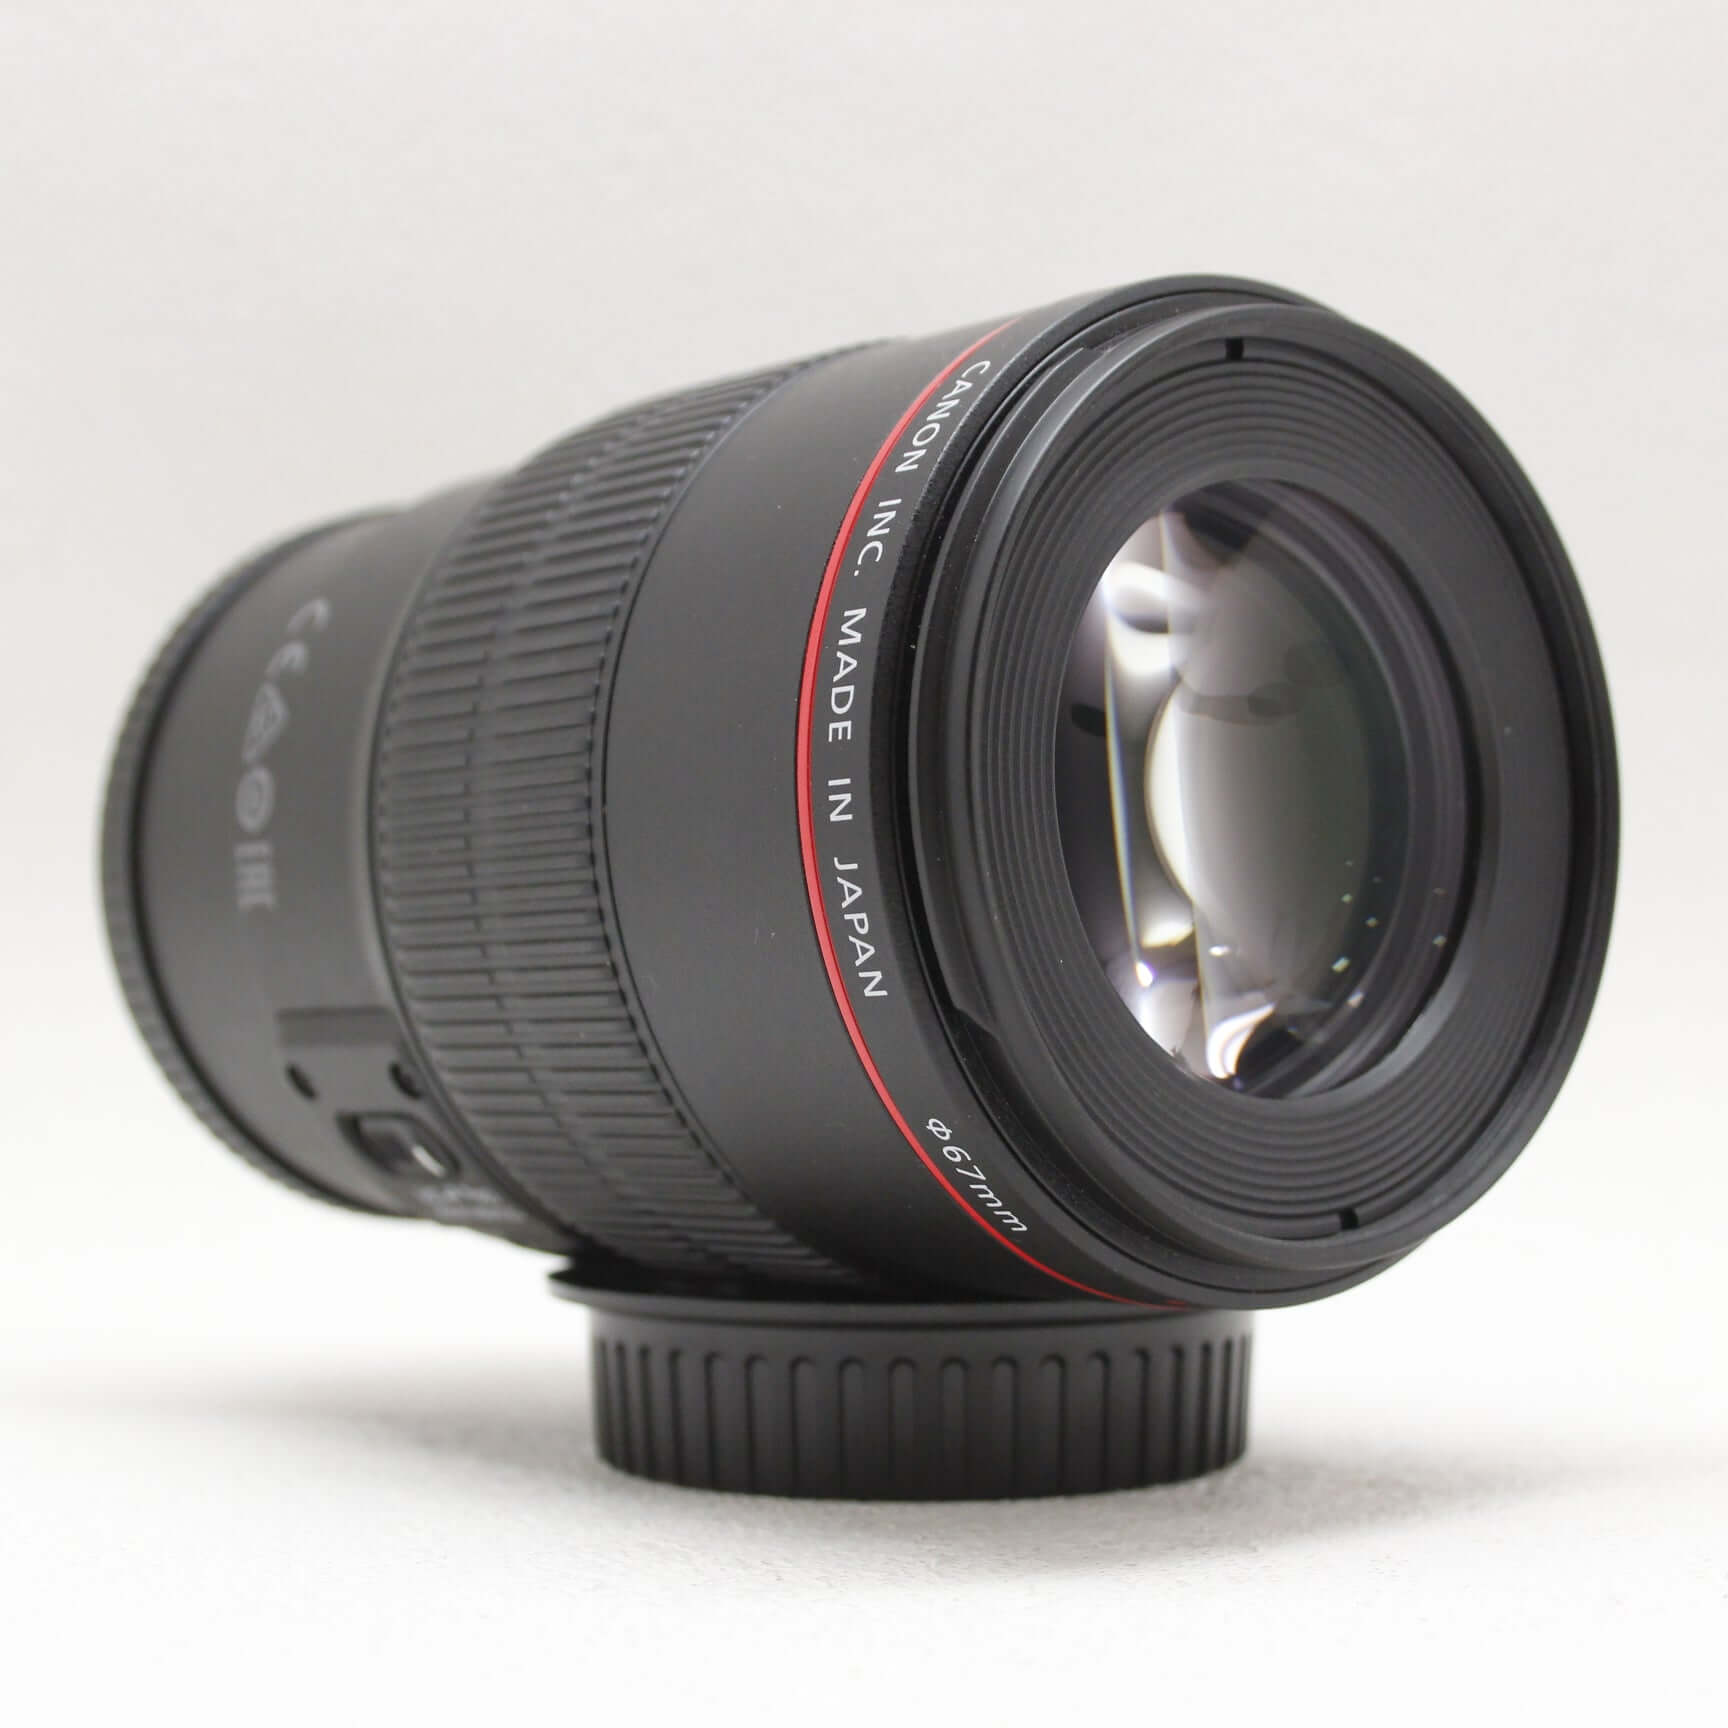 中古品 Canon EF100mm F2.8Lマクロ IS USM